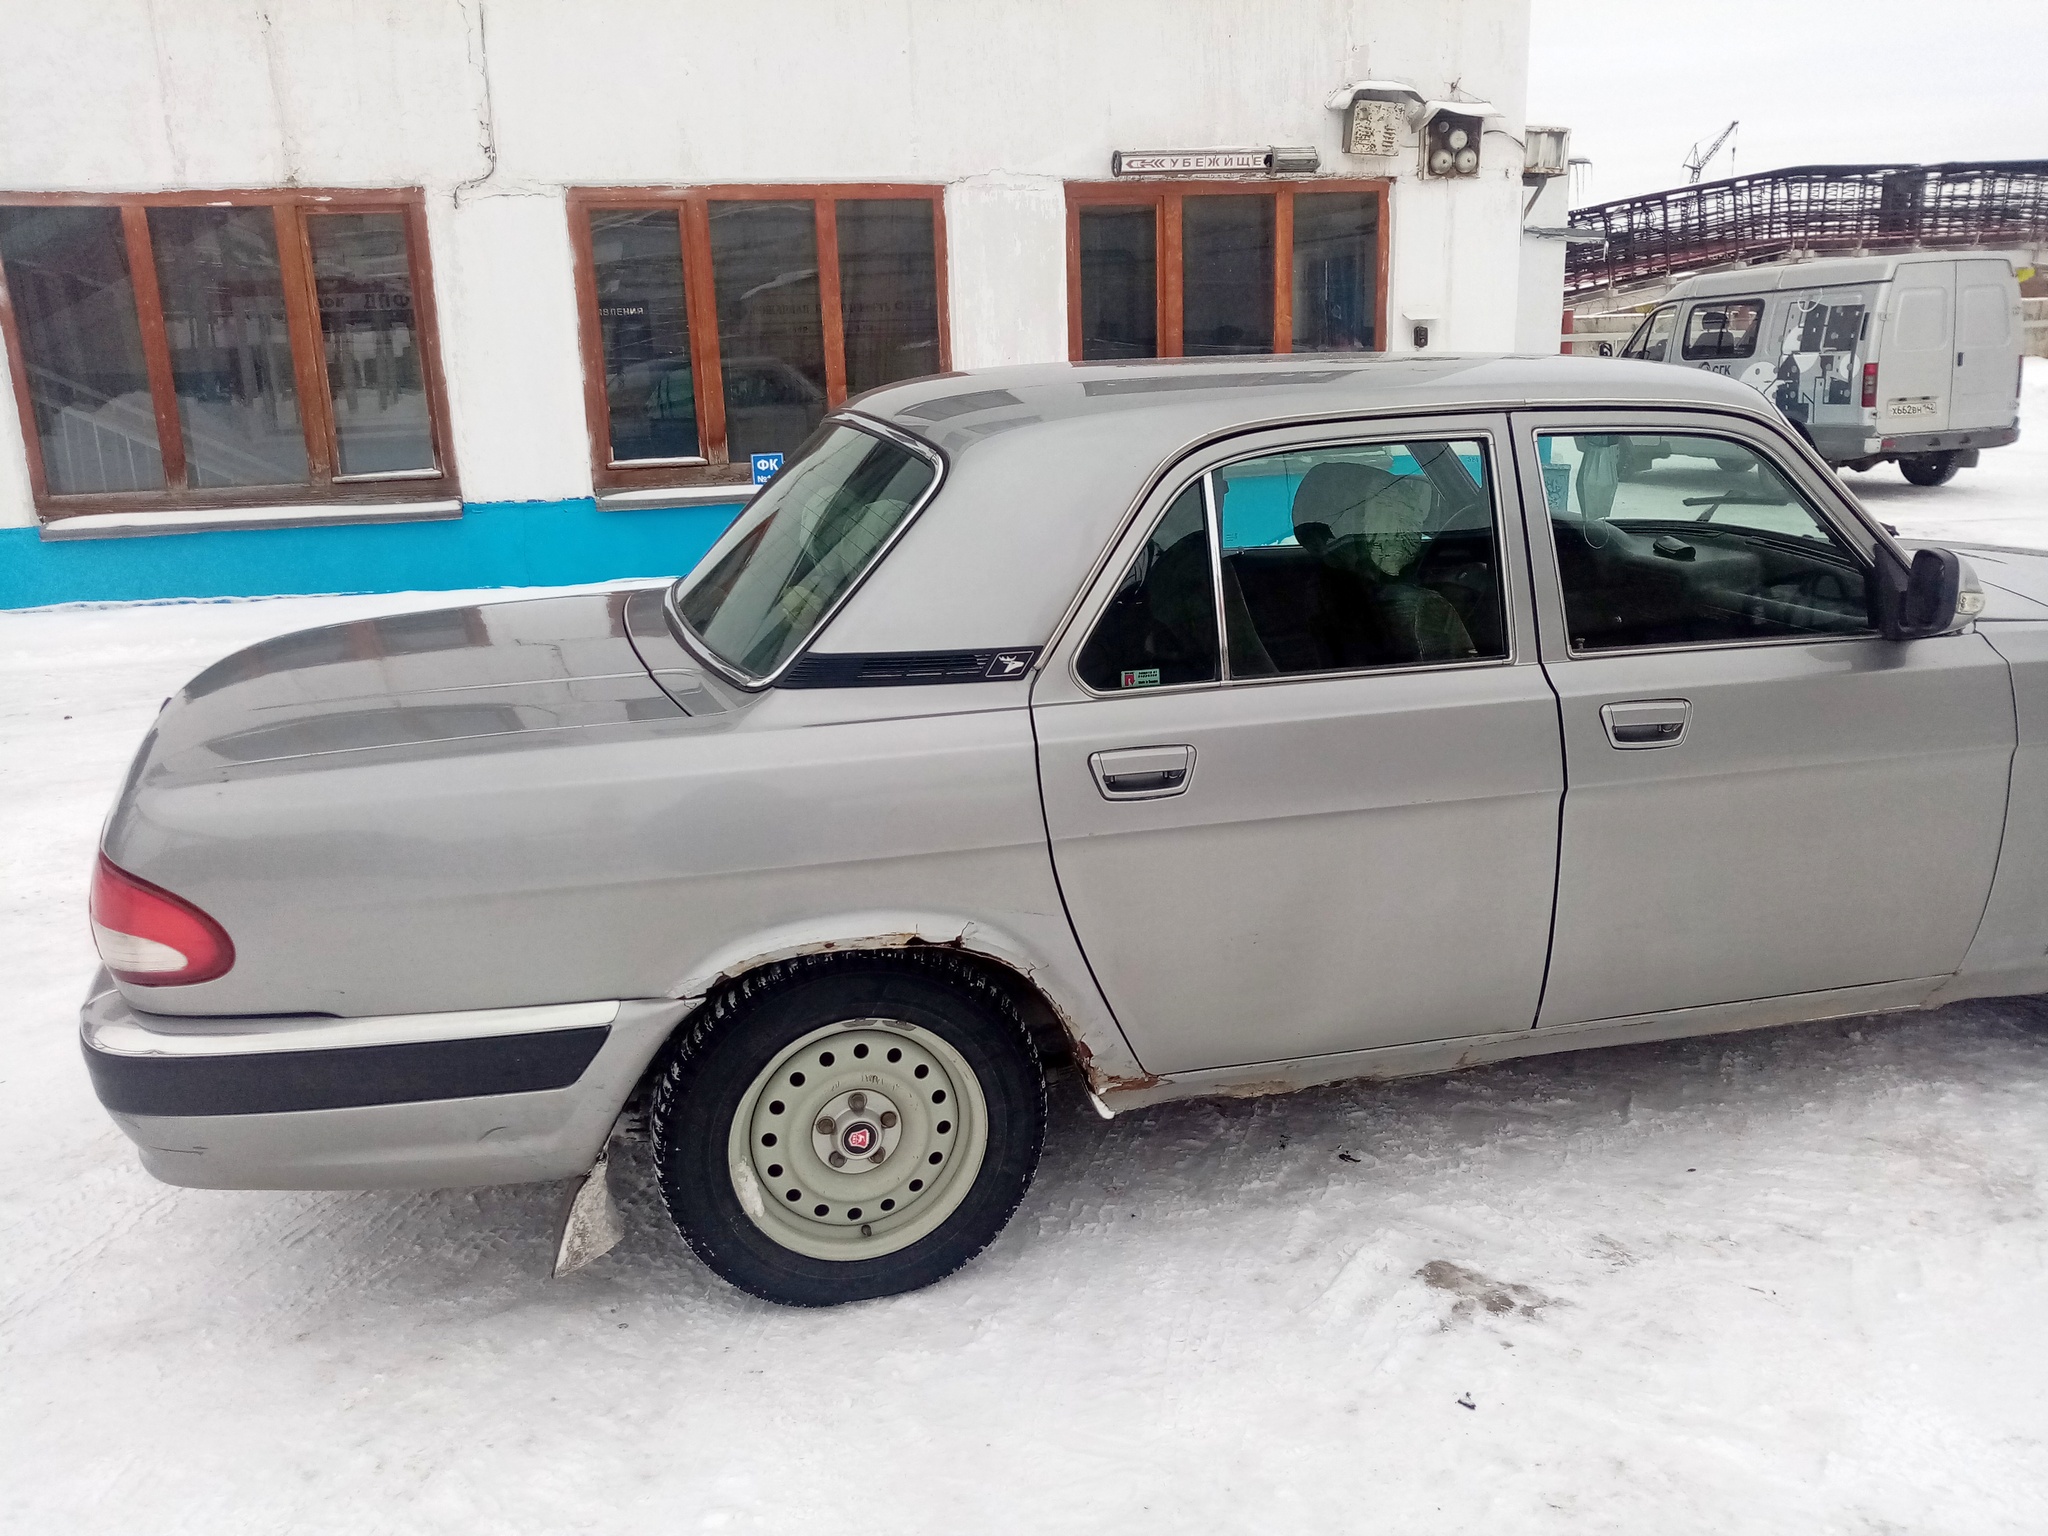 182411-Автомобиль легковой ГАЗ-31105 Волга, 2006 г.в.-1